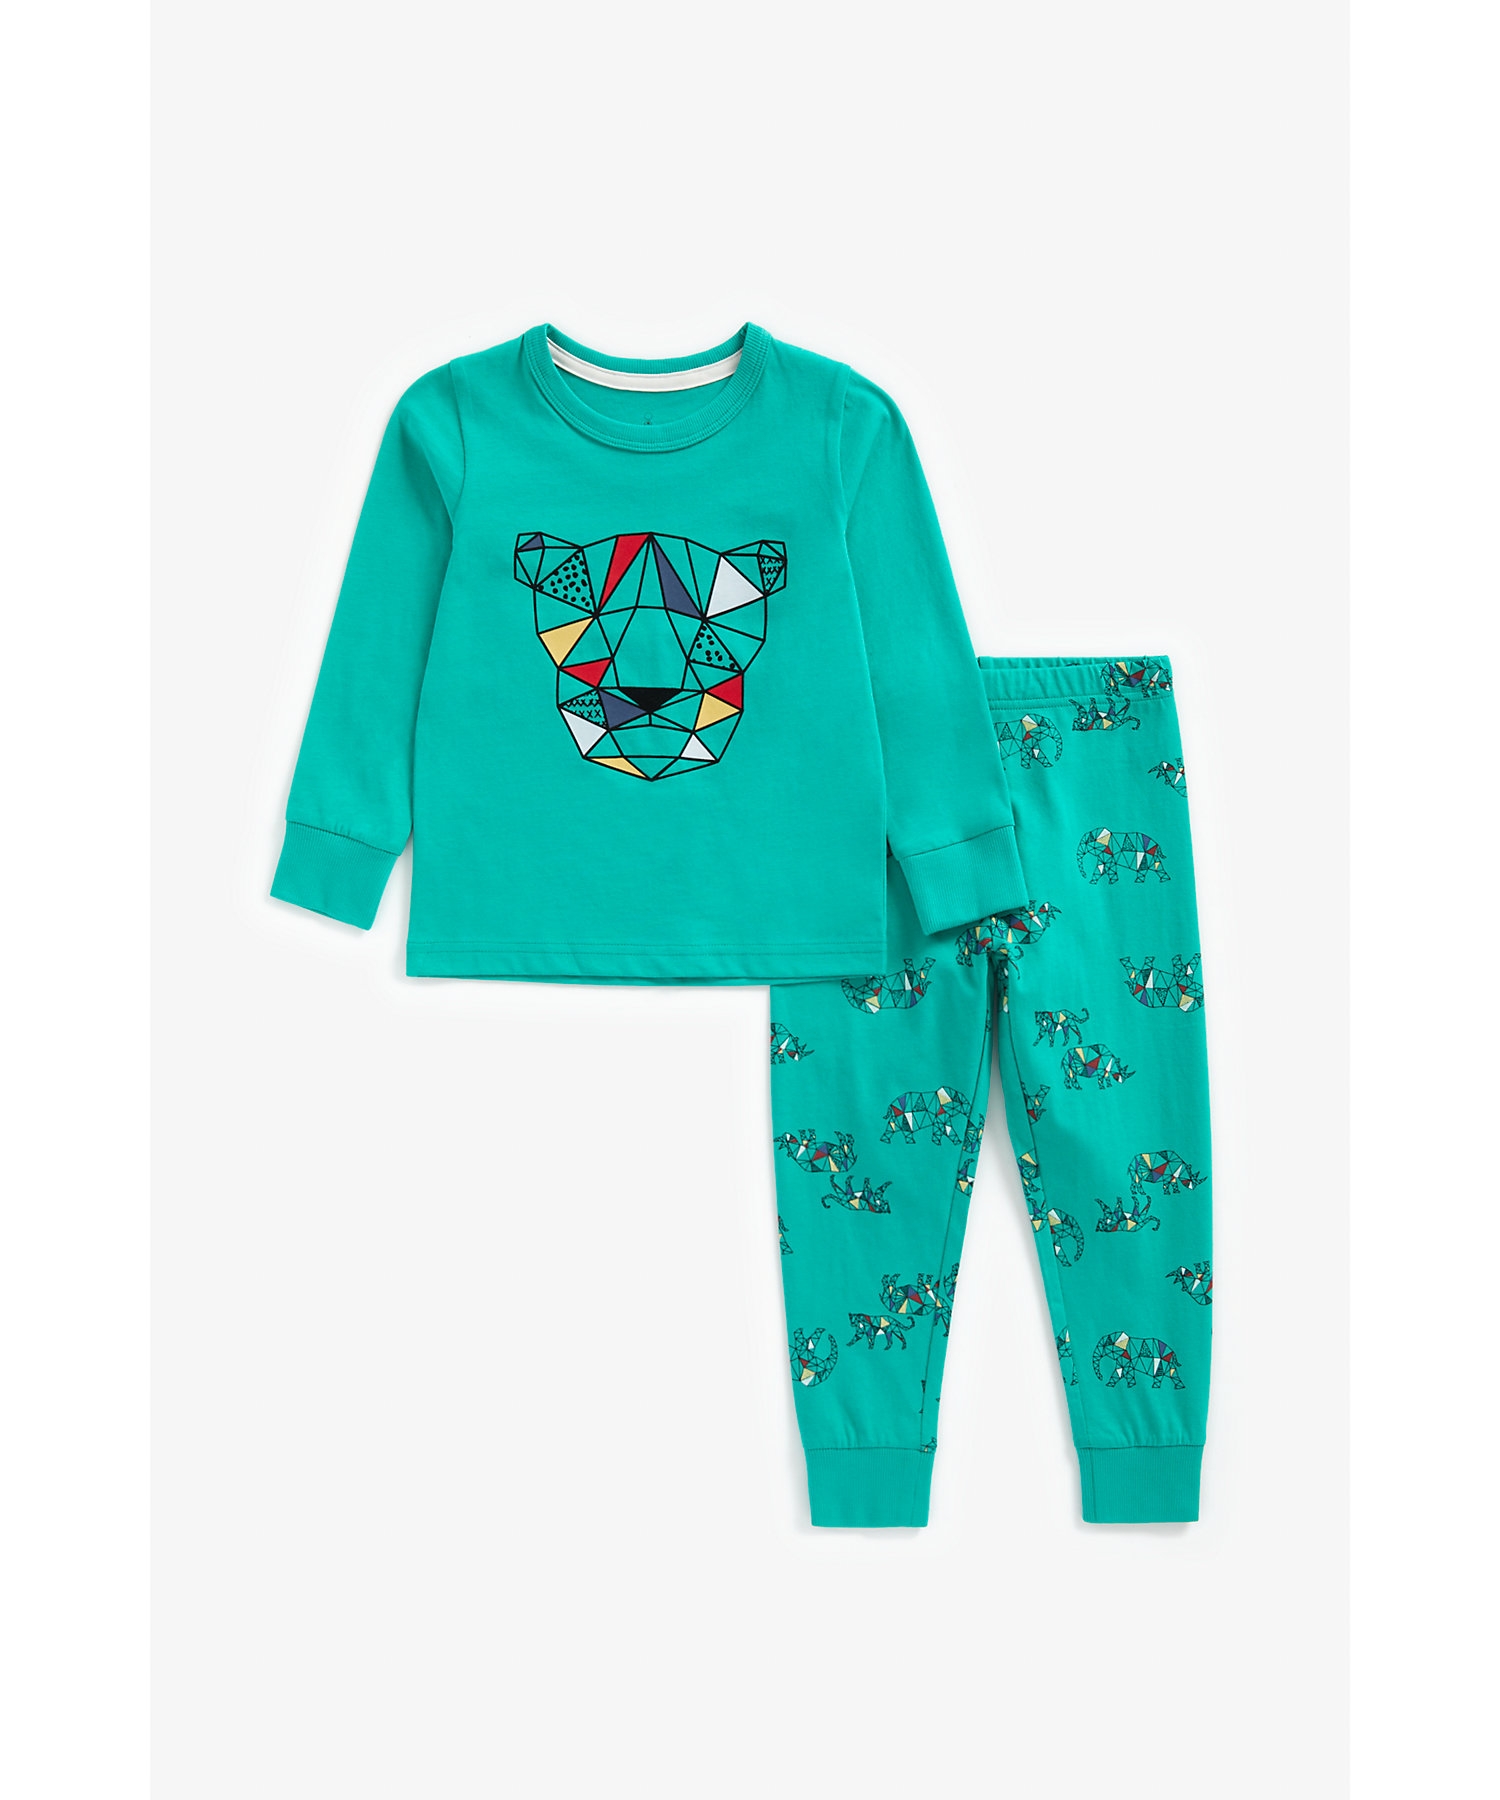 Mothercare | Boys Full Sleeves Pyjama Set Geo Safari Print - Teal